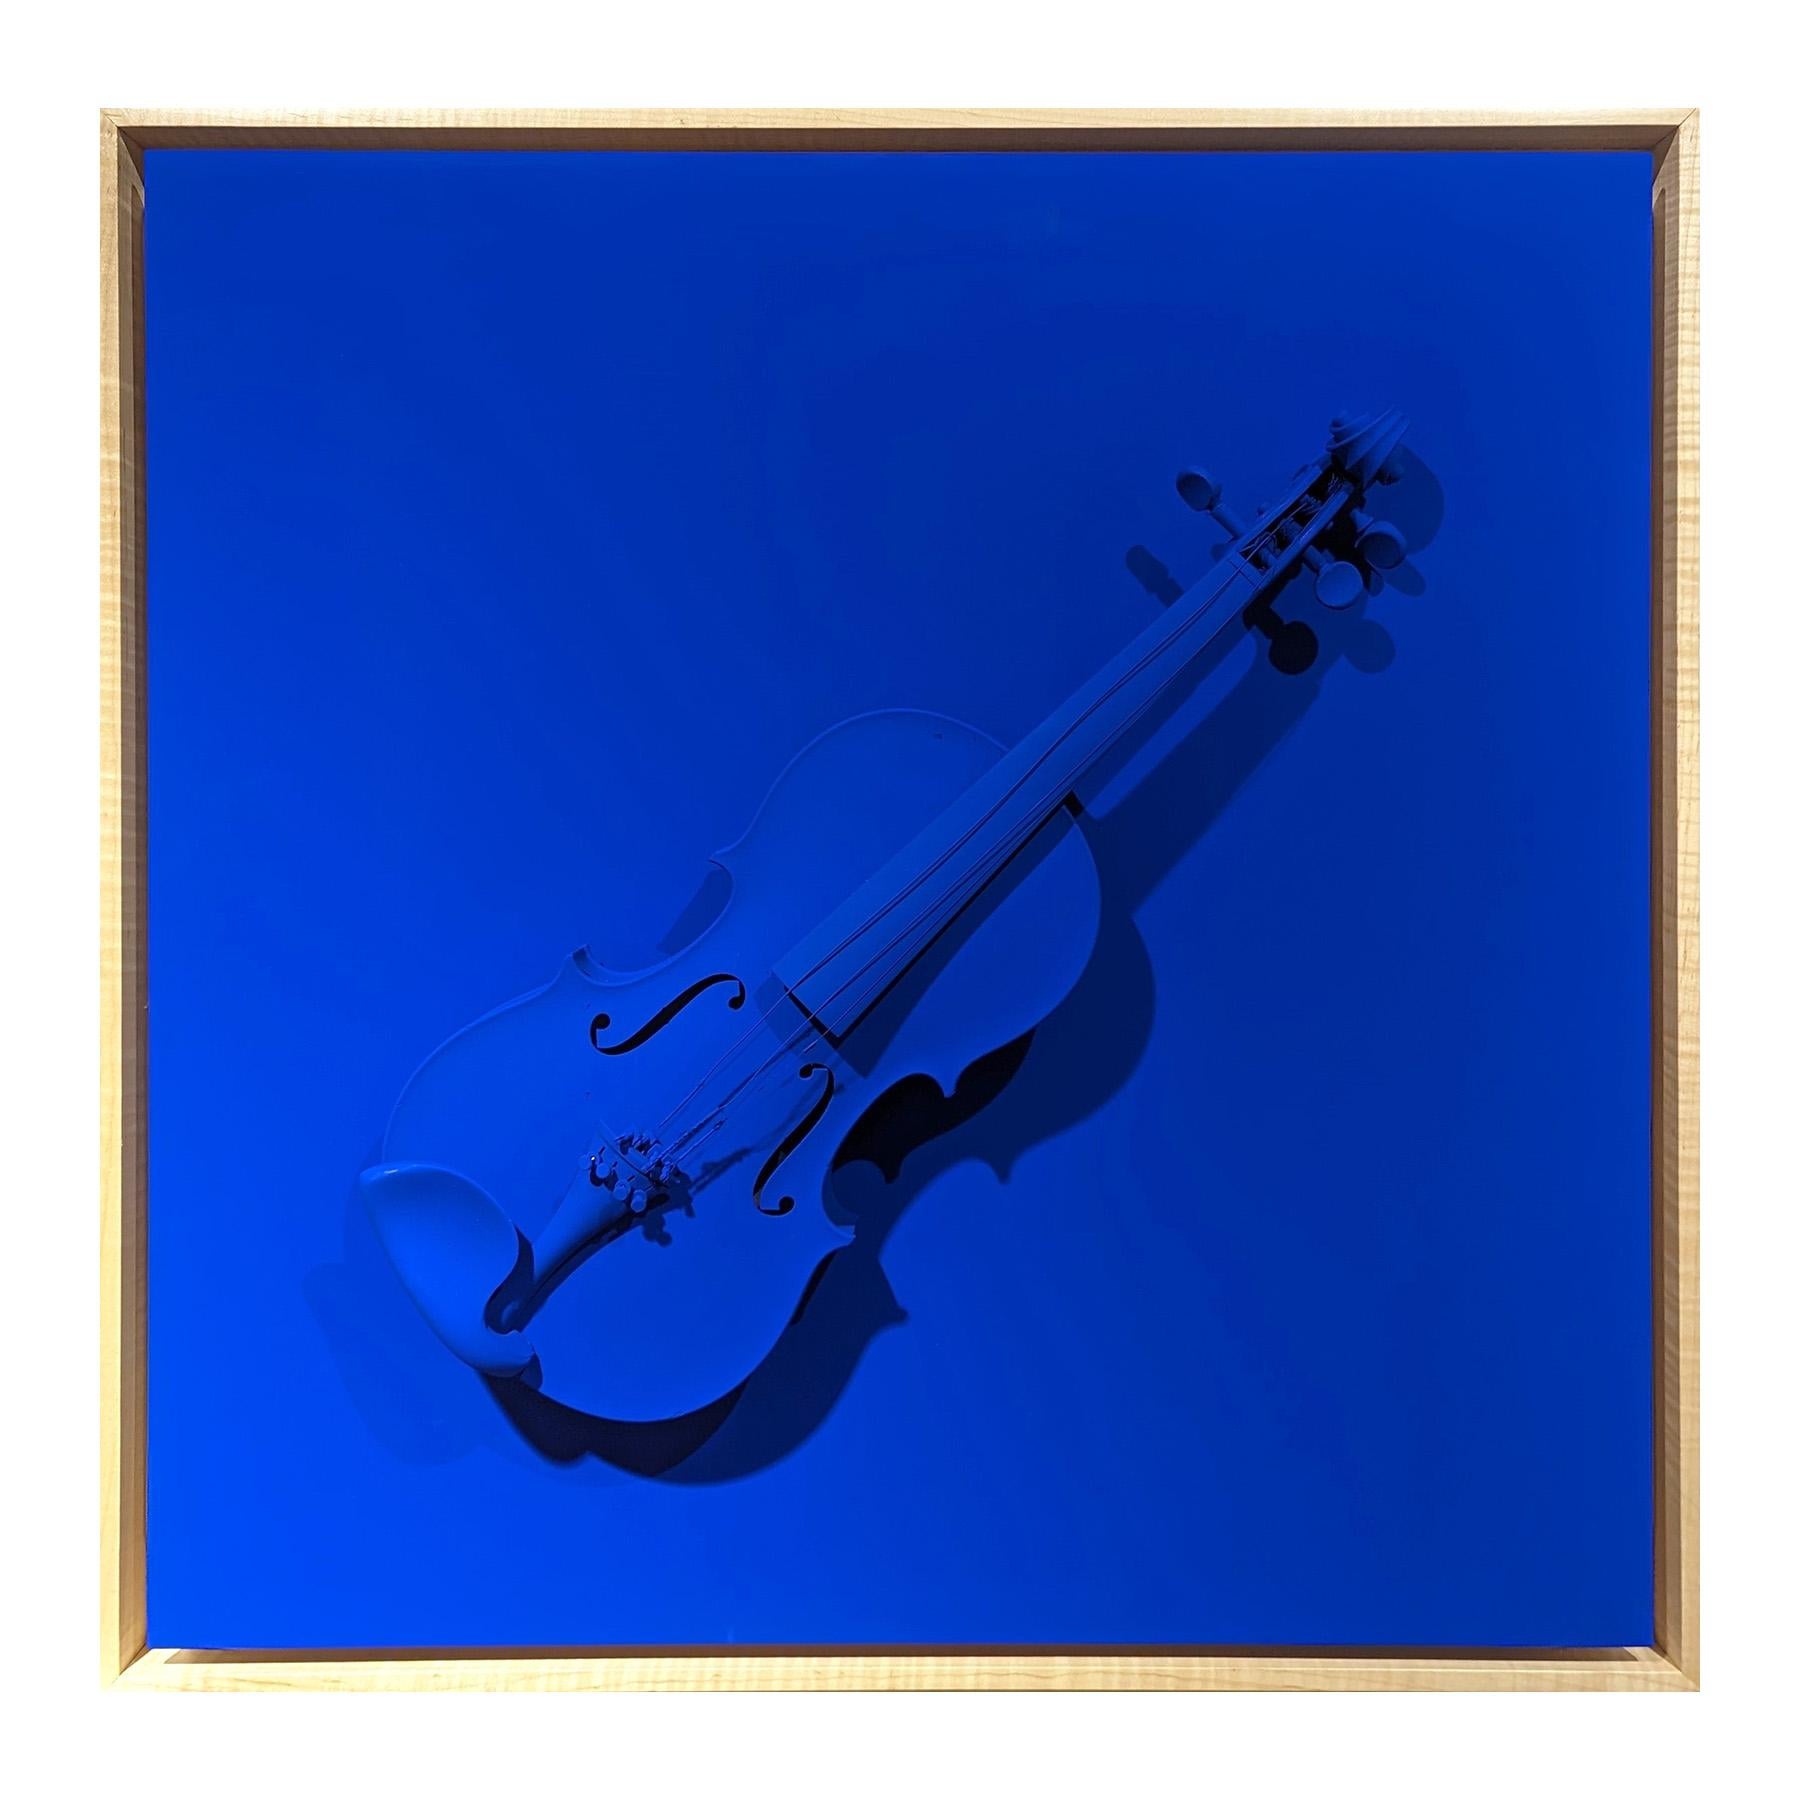 Hellblaues skulpturales Gemälde des zeitgenössischen Künstlers Paul Reeves. Das Werk zeigt eine gefundene, blau bemalte Geige, die vor einem Hintergrund in der gleichen leuchtenden blauen Farbe schwebt. Derzeit in einem hellen, schwebenden